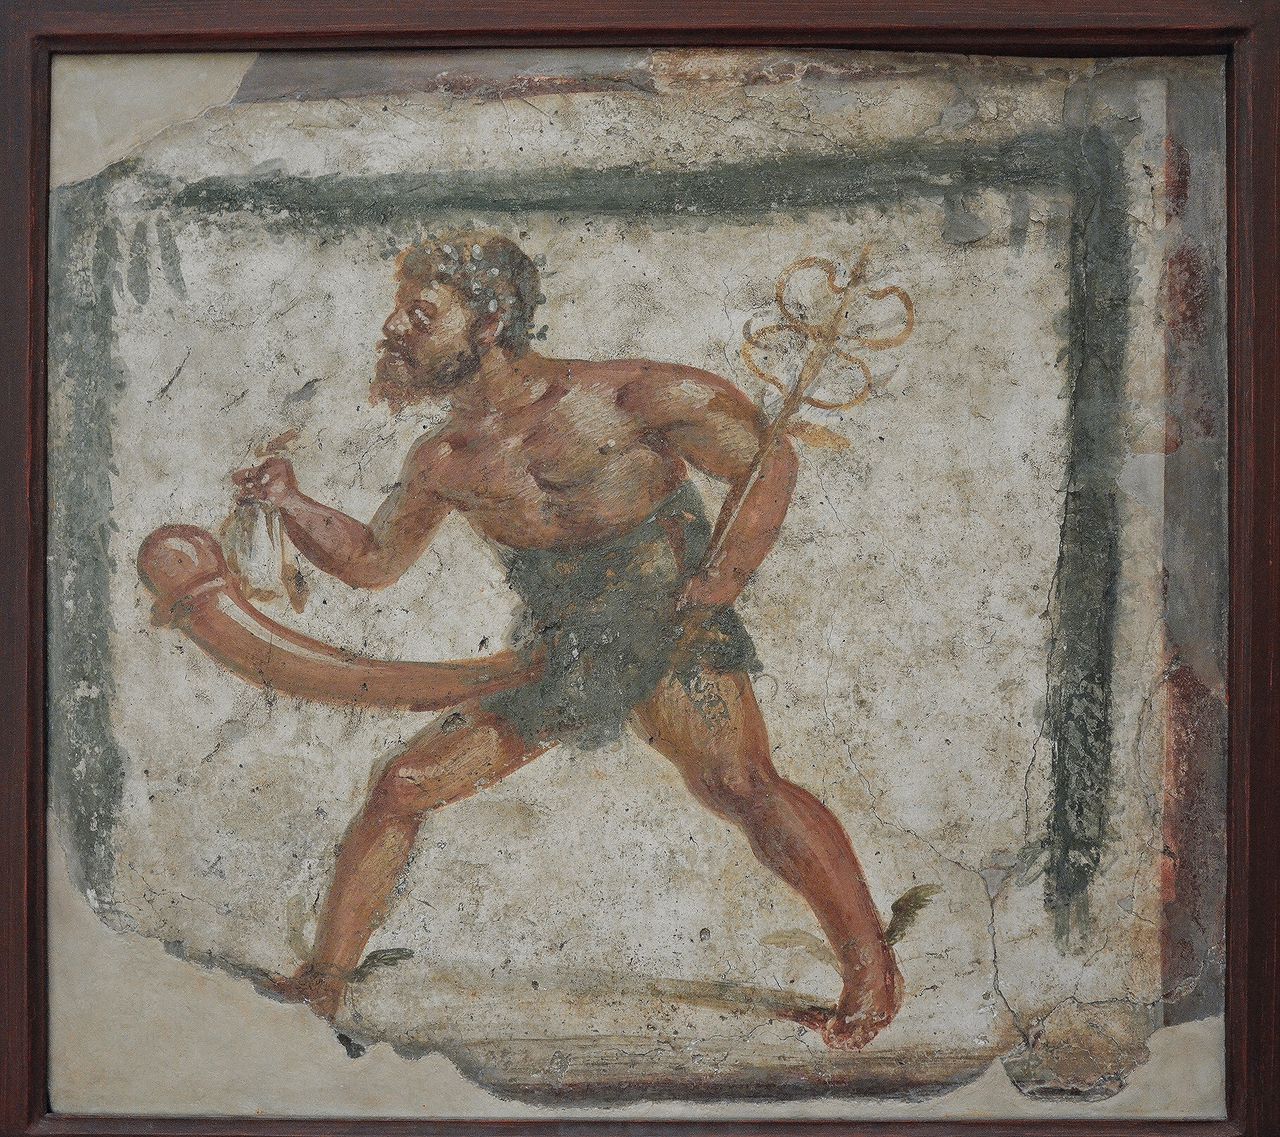 De vruchtbaarheidsgod Priapus komt zowel in de Griekse als de Romeinse mythologie voor. Hij is ook beschermer van het mannelijk geslachtsdeel.